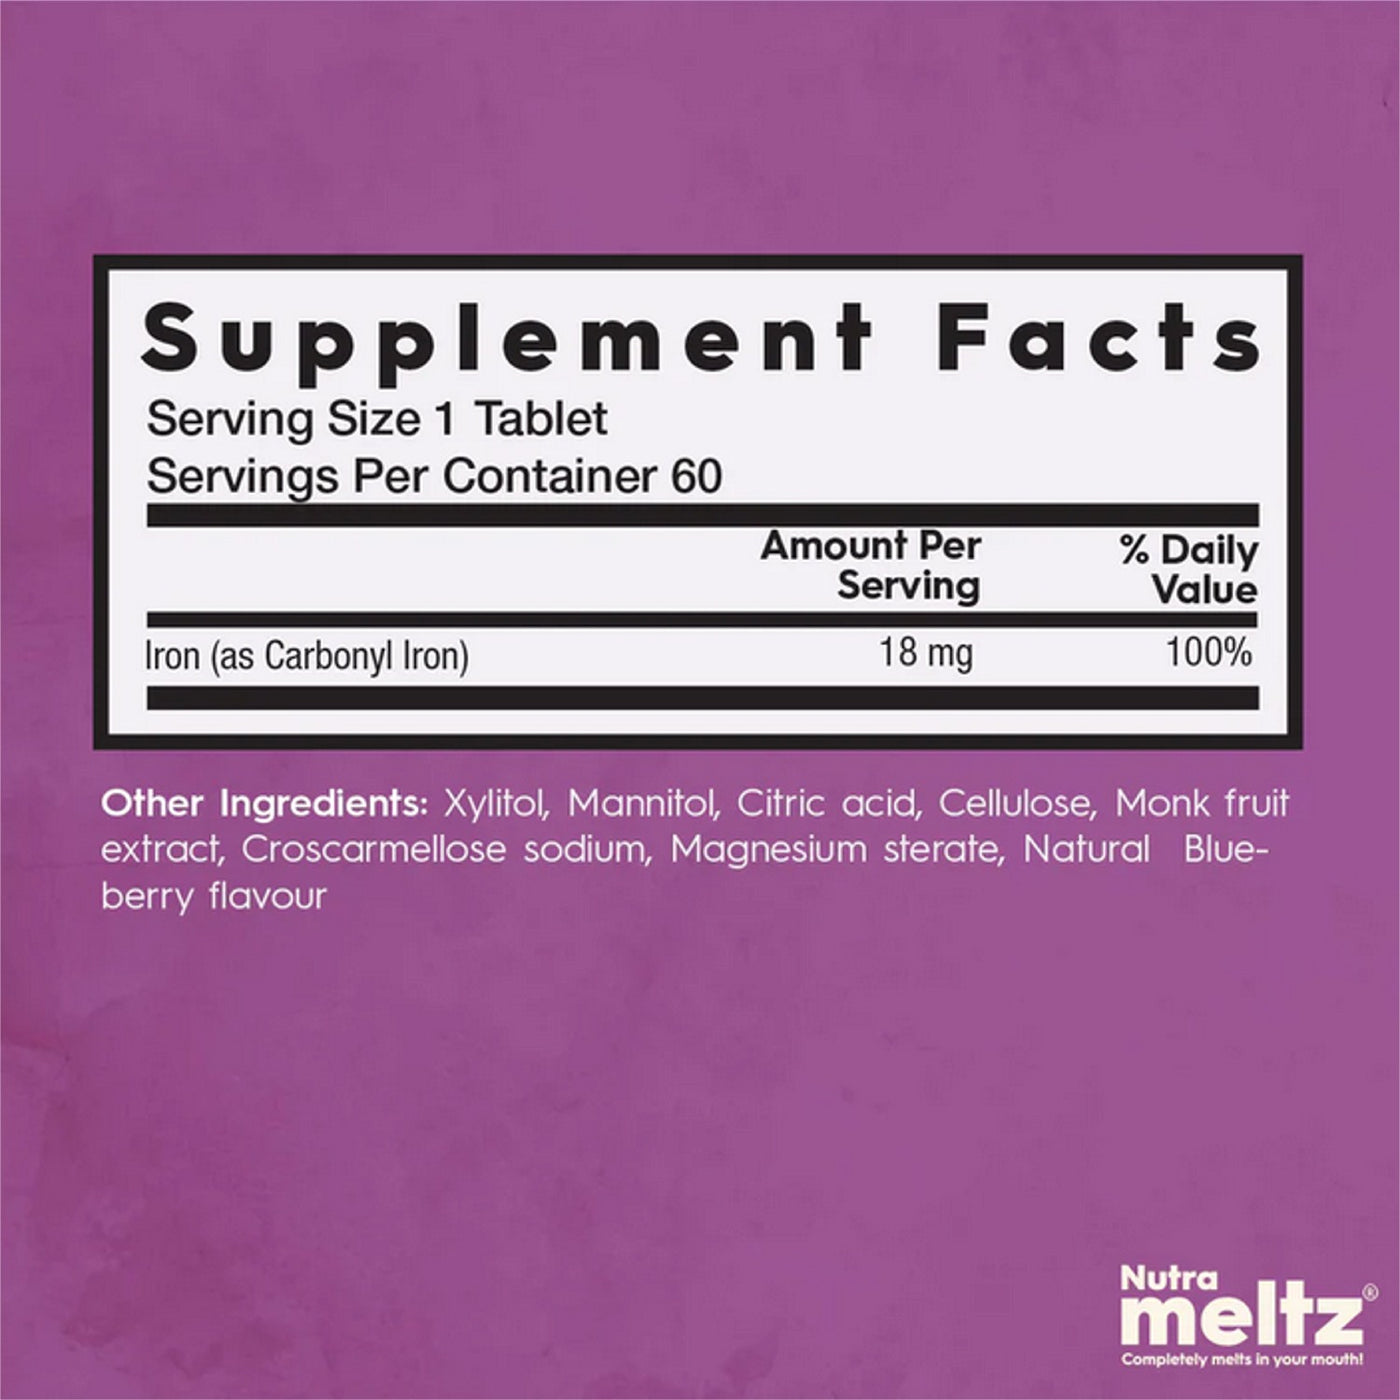 NUTRAMELTZ Carbonyl Iron (18 mg - 60 Melts)